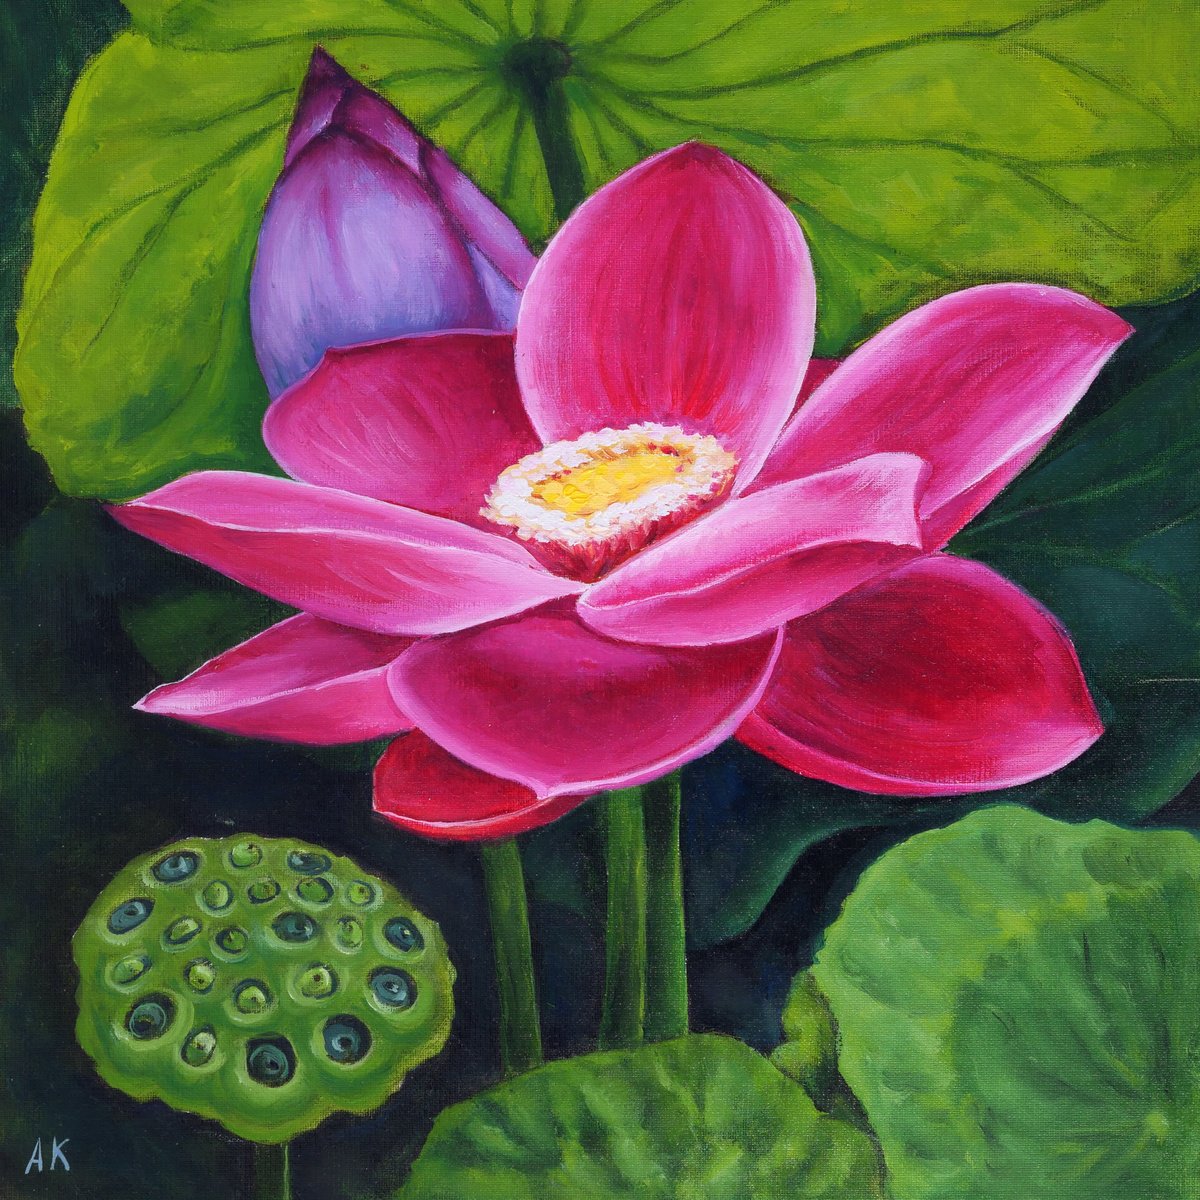 Blooming lotus by Alfia Koral